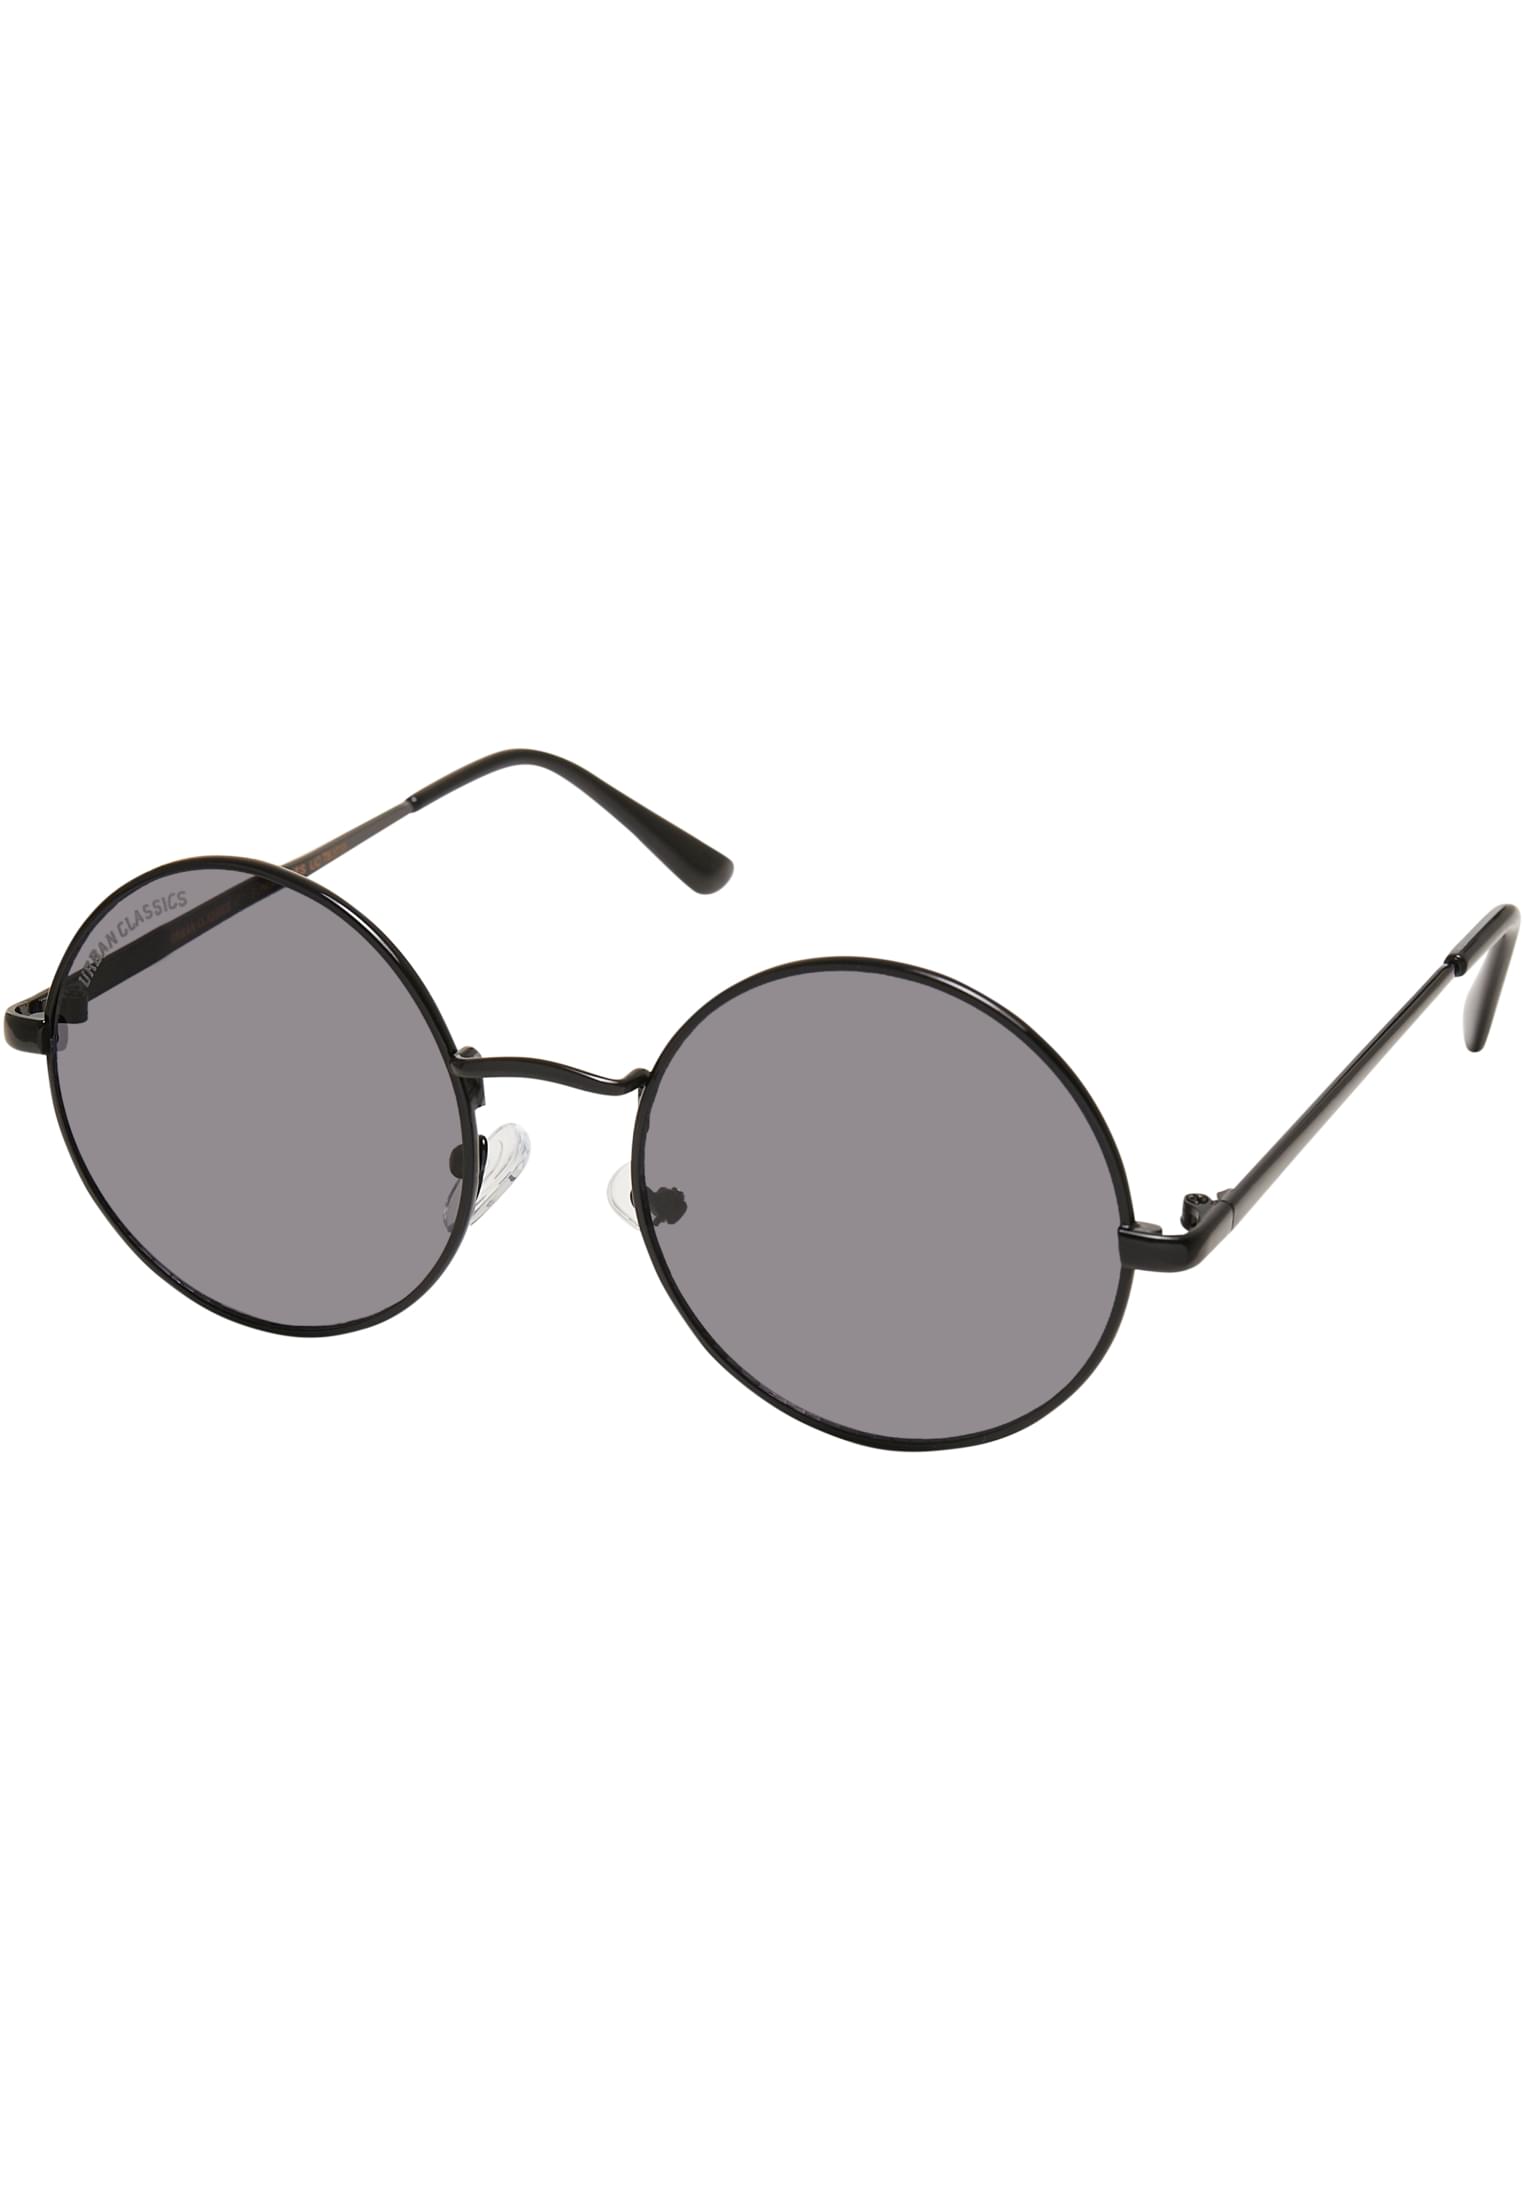 UC-TB3735 107 Sunglasses